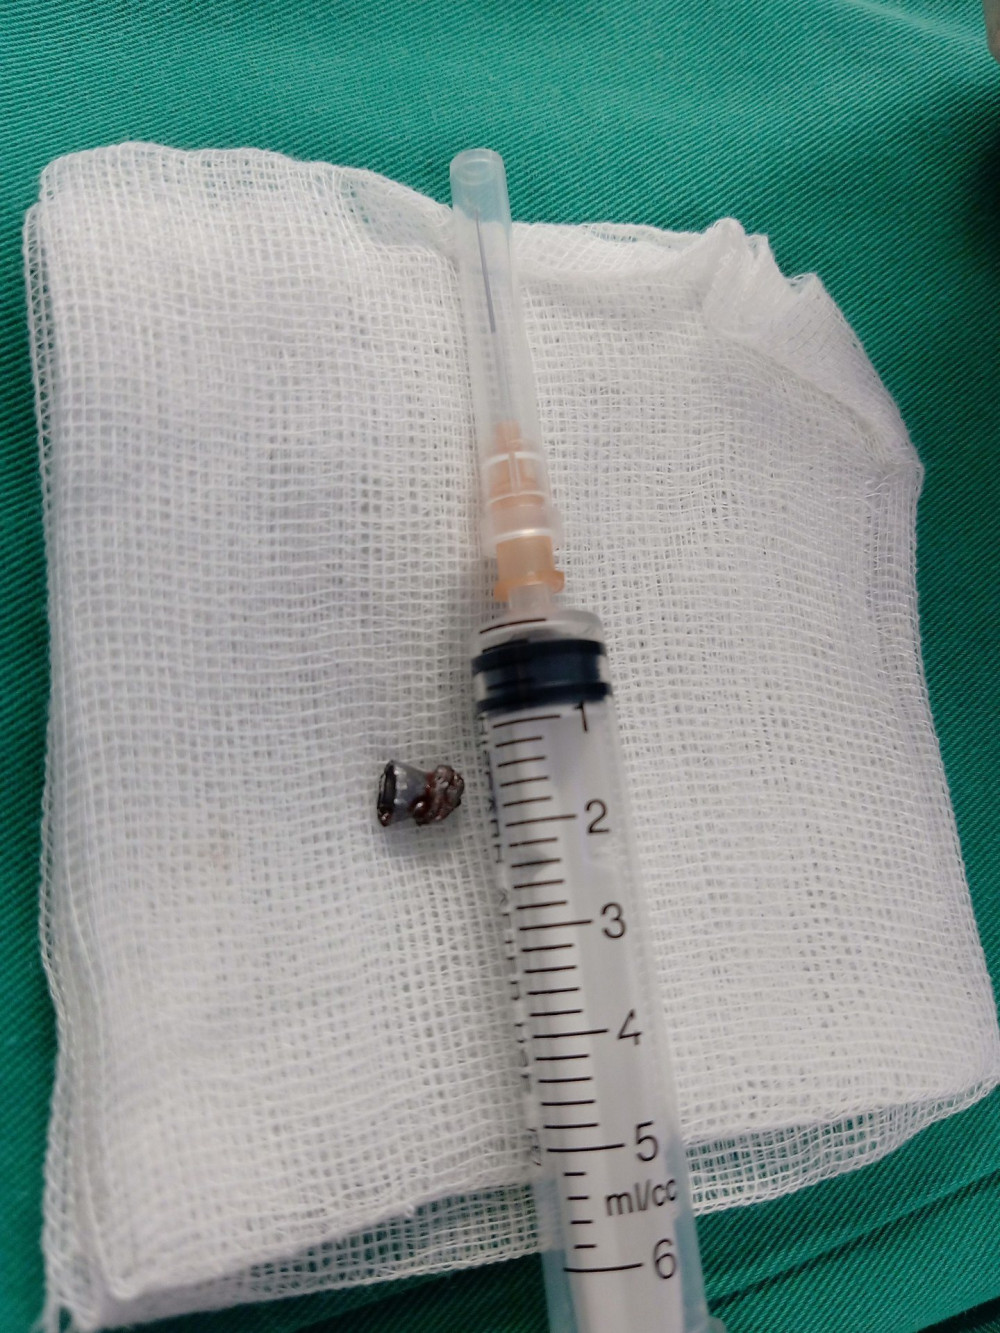 Viên đạn đã bắn xuyên từ vùng cổ lên tai của bệnh nhân